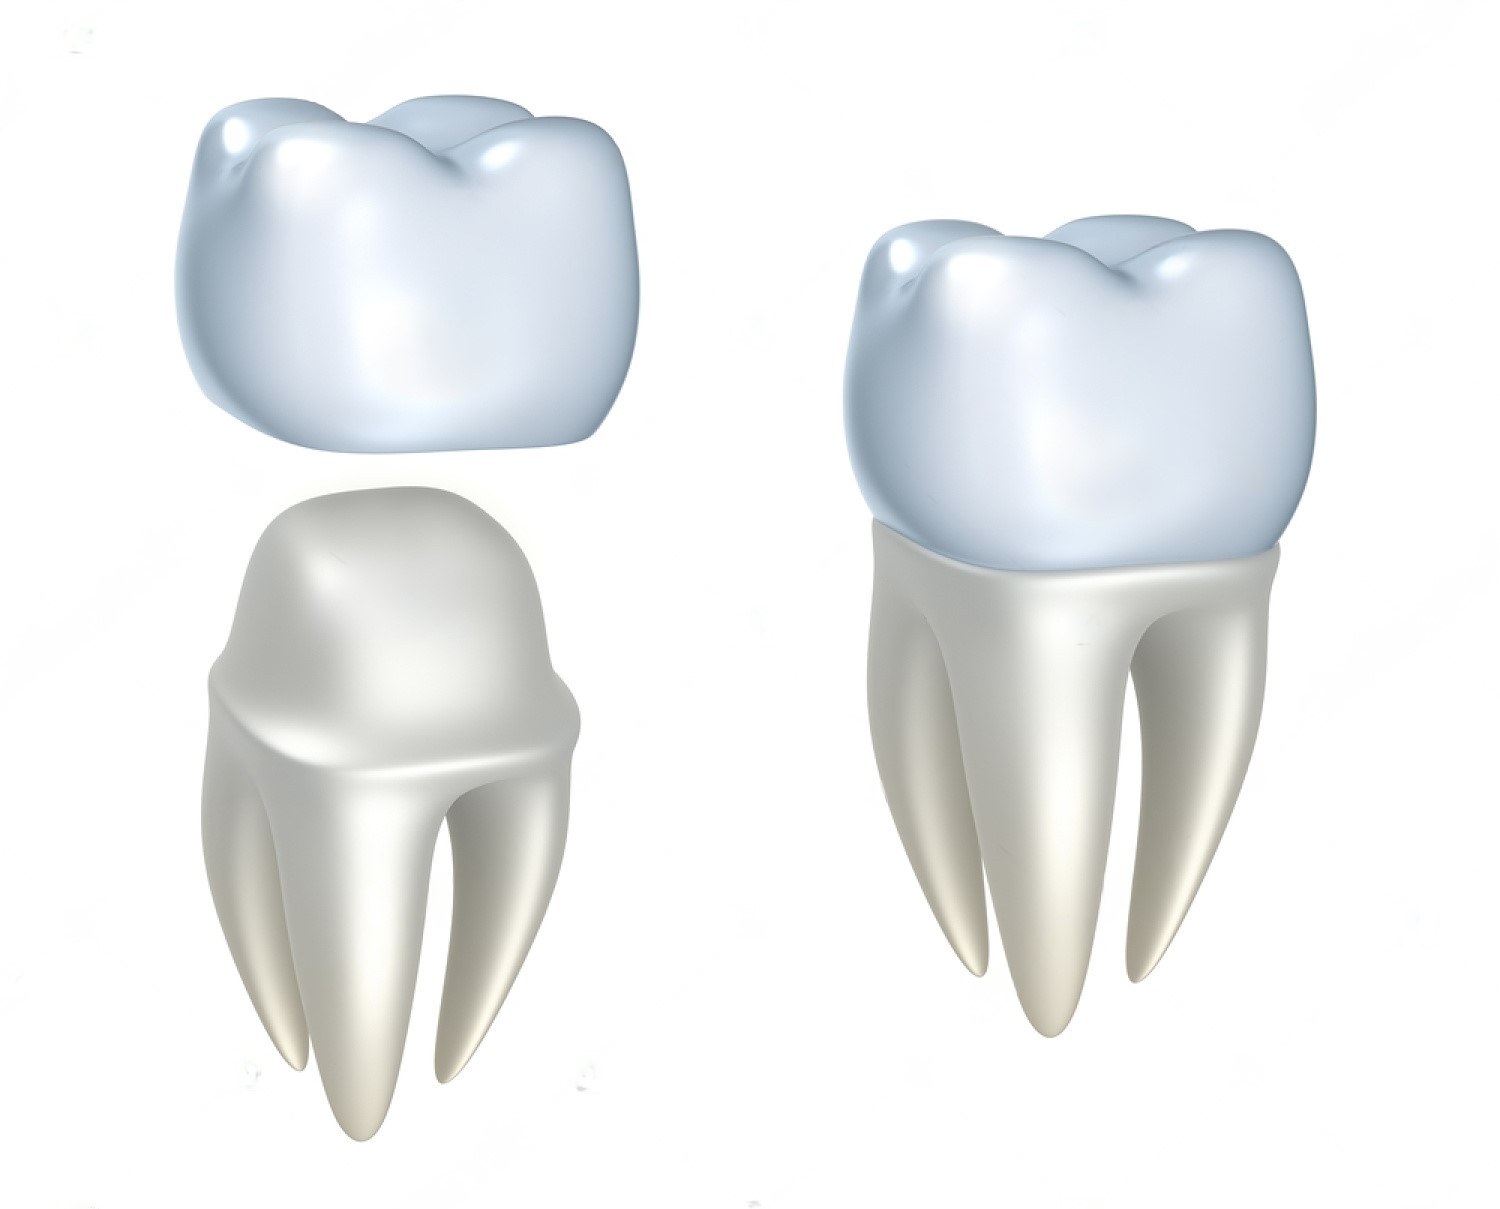 Left Image - 1-Dental Crowns & Bridges